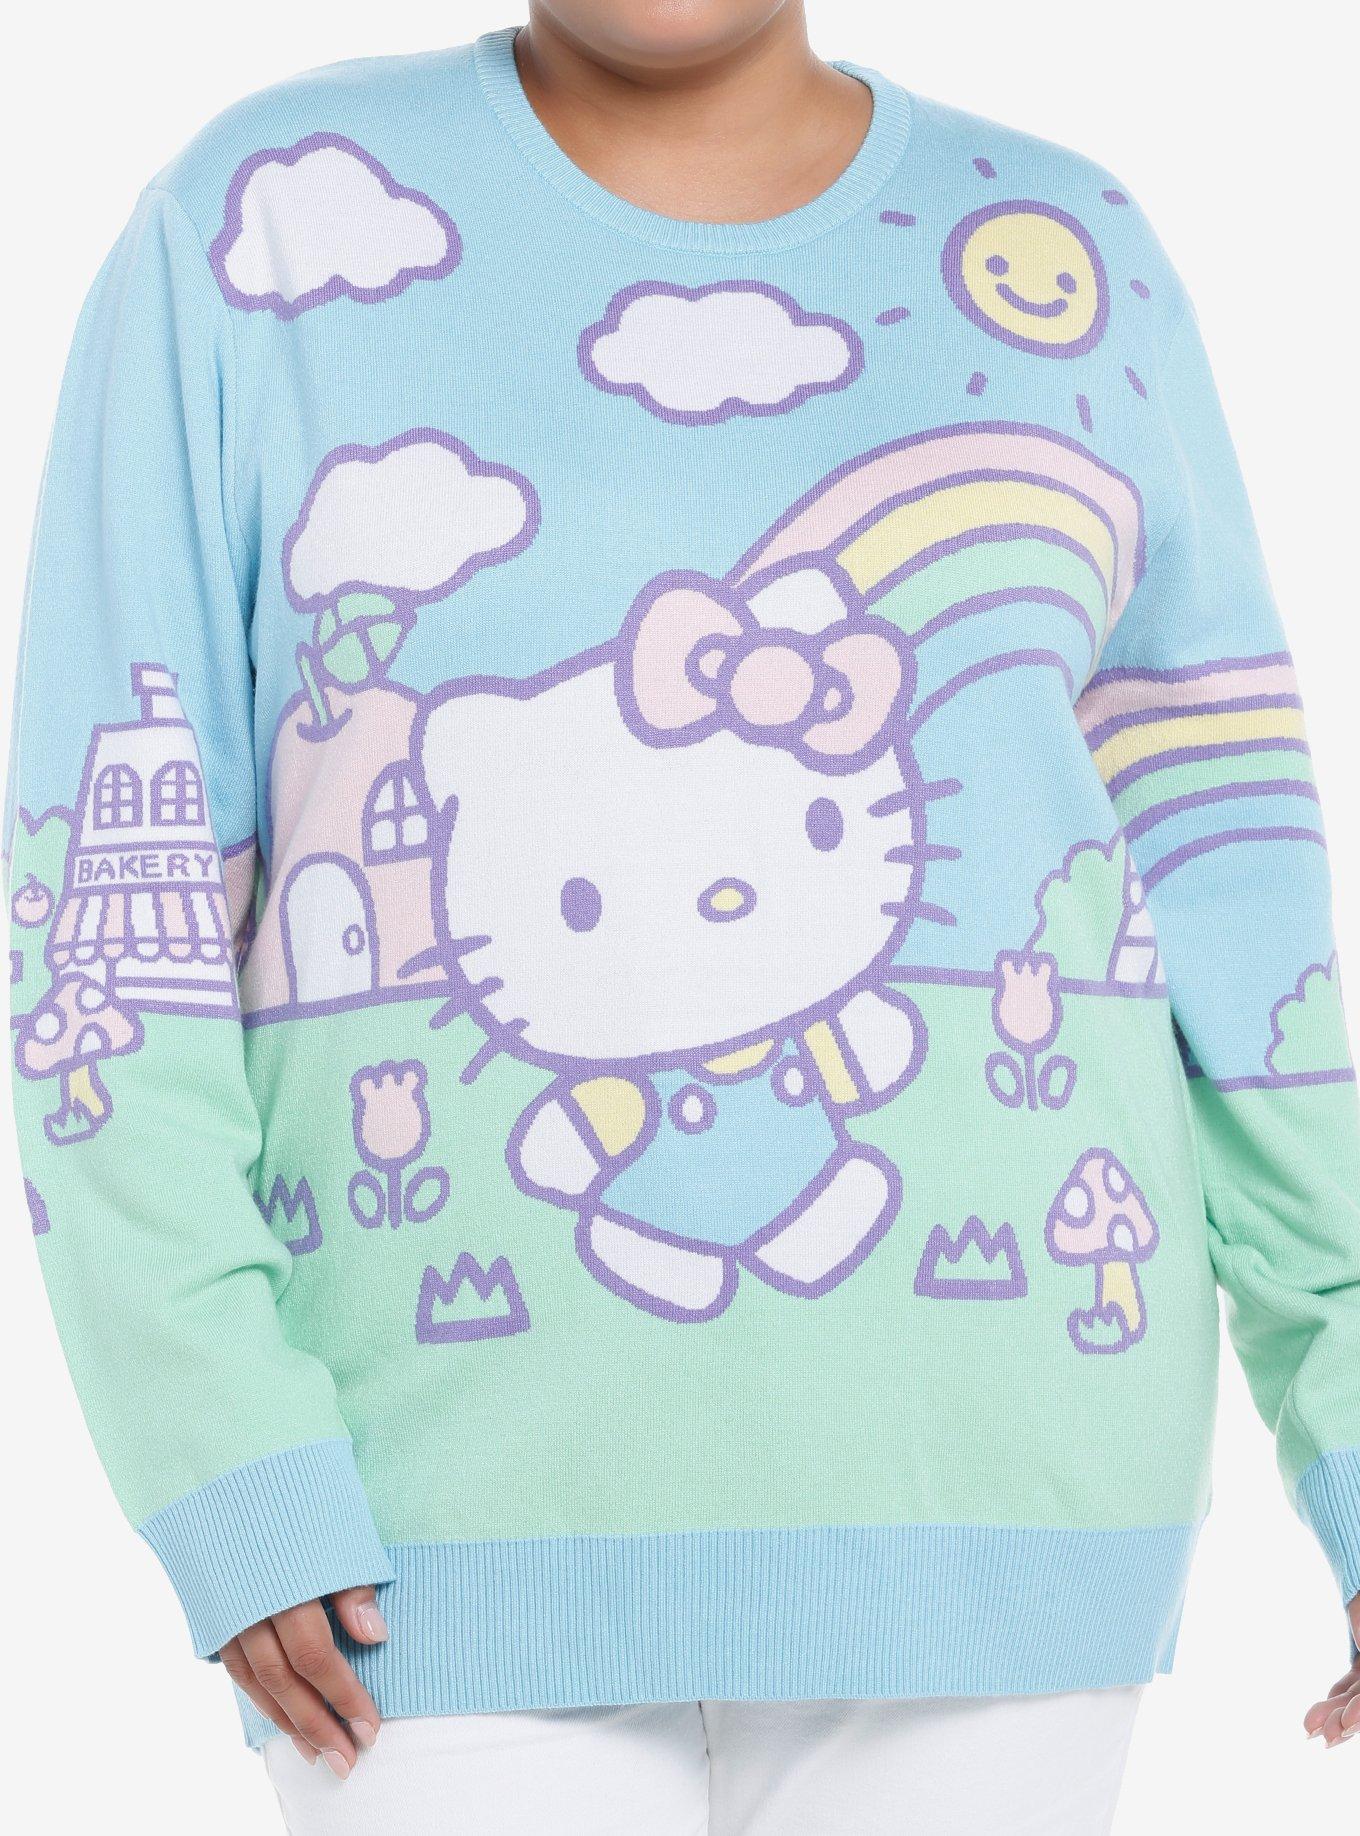 Hello Kitty Jumbo Art Pastel Knit Sweater Plus Size, MULTI, hi-res